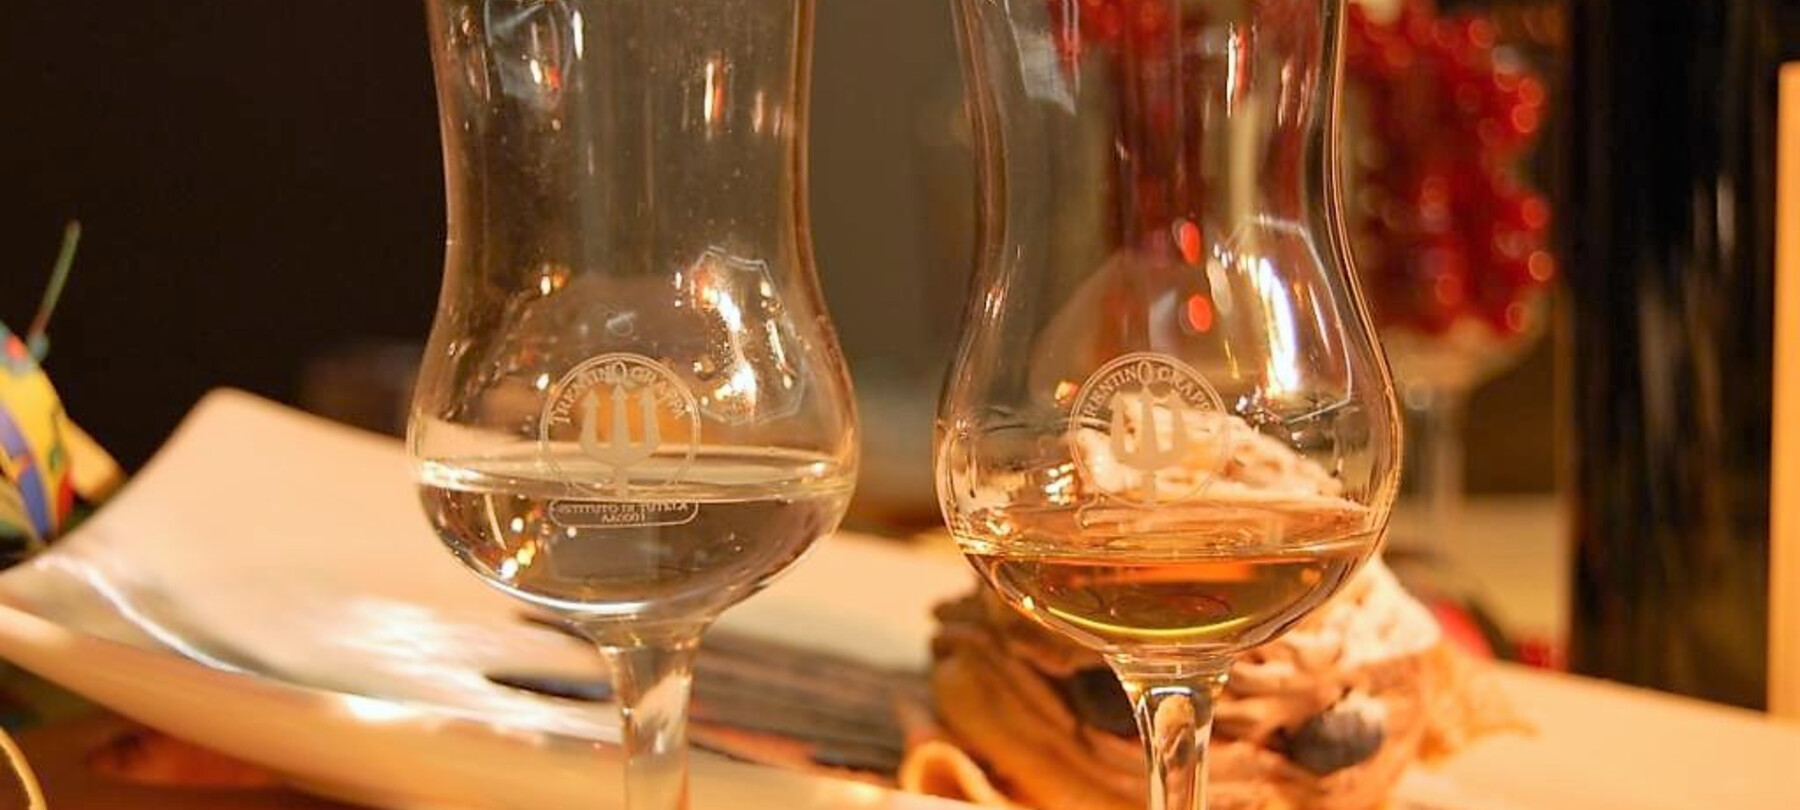 La grappa del Trentino: un distillato di territorio e qualità